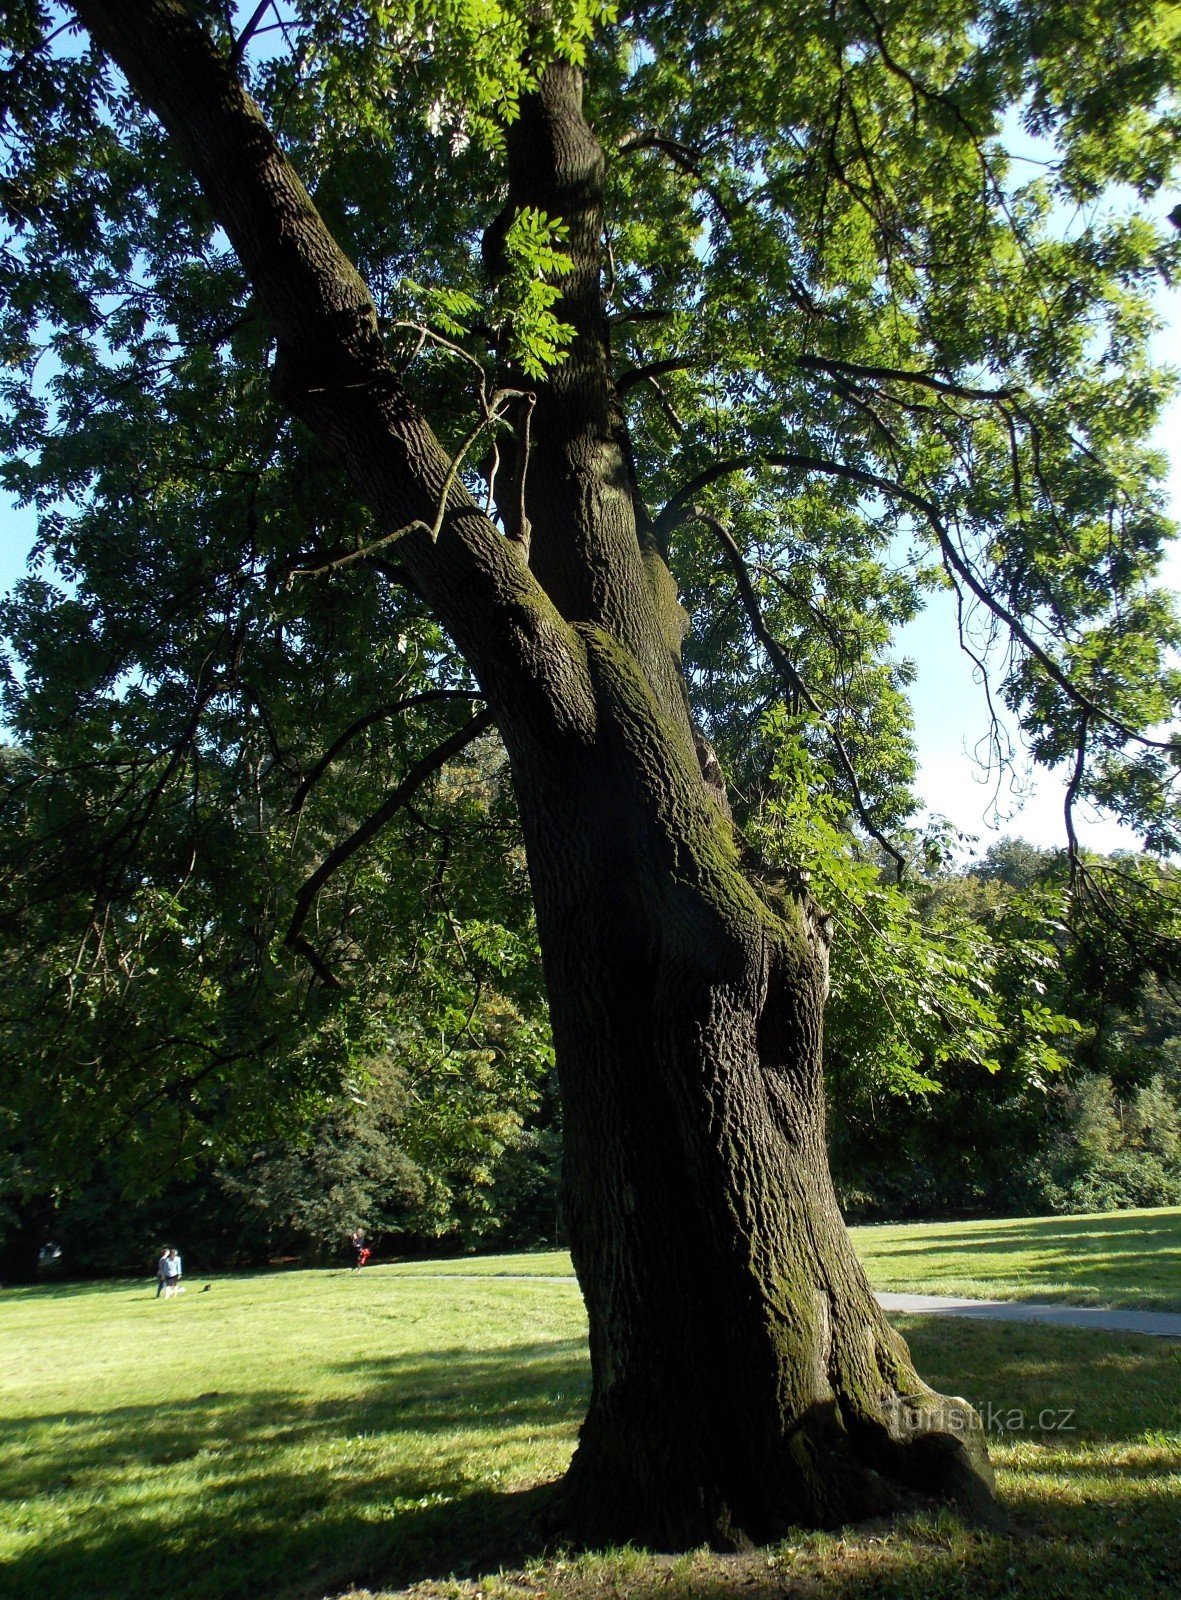 Памятное дерево в замковом парке Б. Немцове в городе Карвина